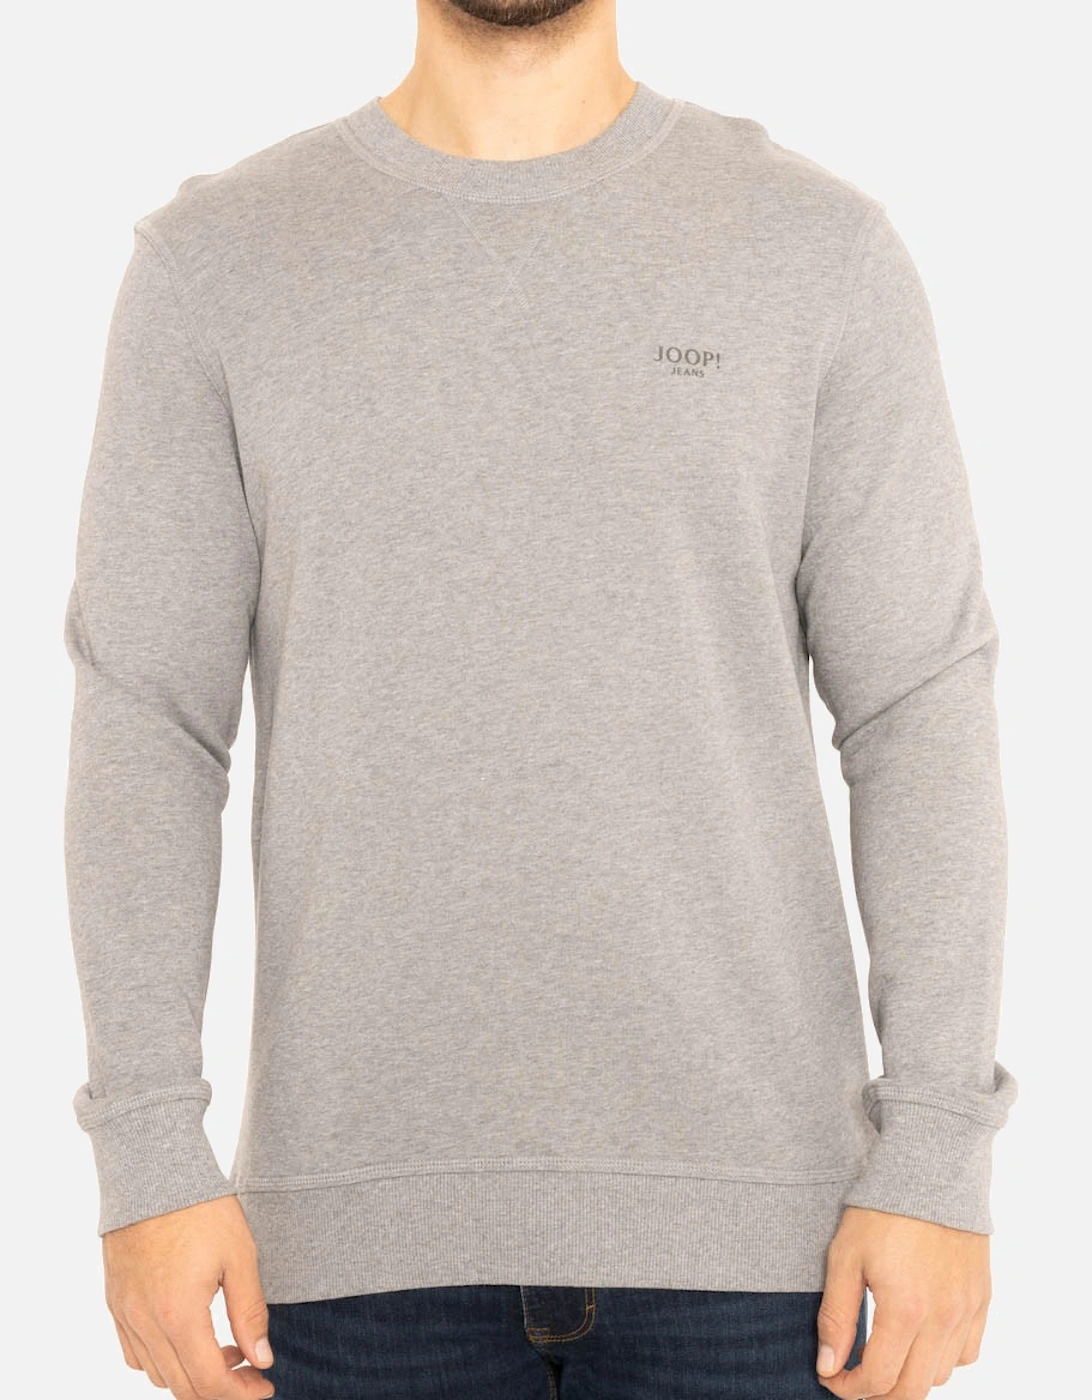 Joop Mens Crew Sweatshirt (Silver), 7 of 6